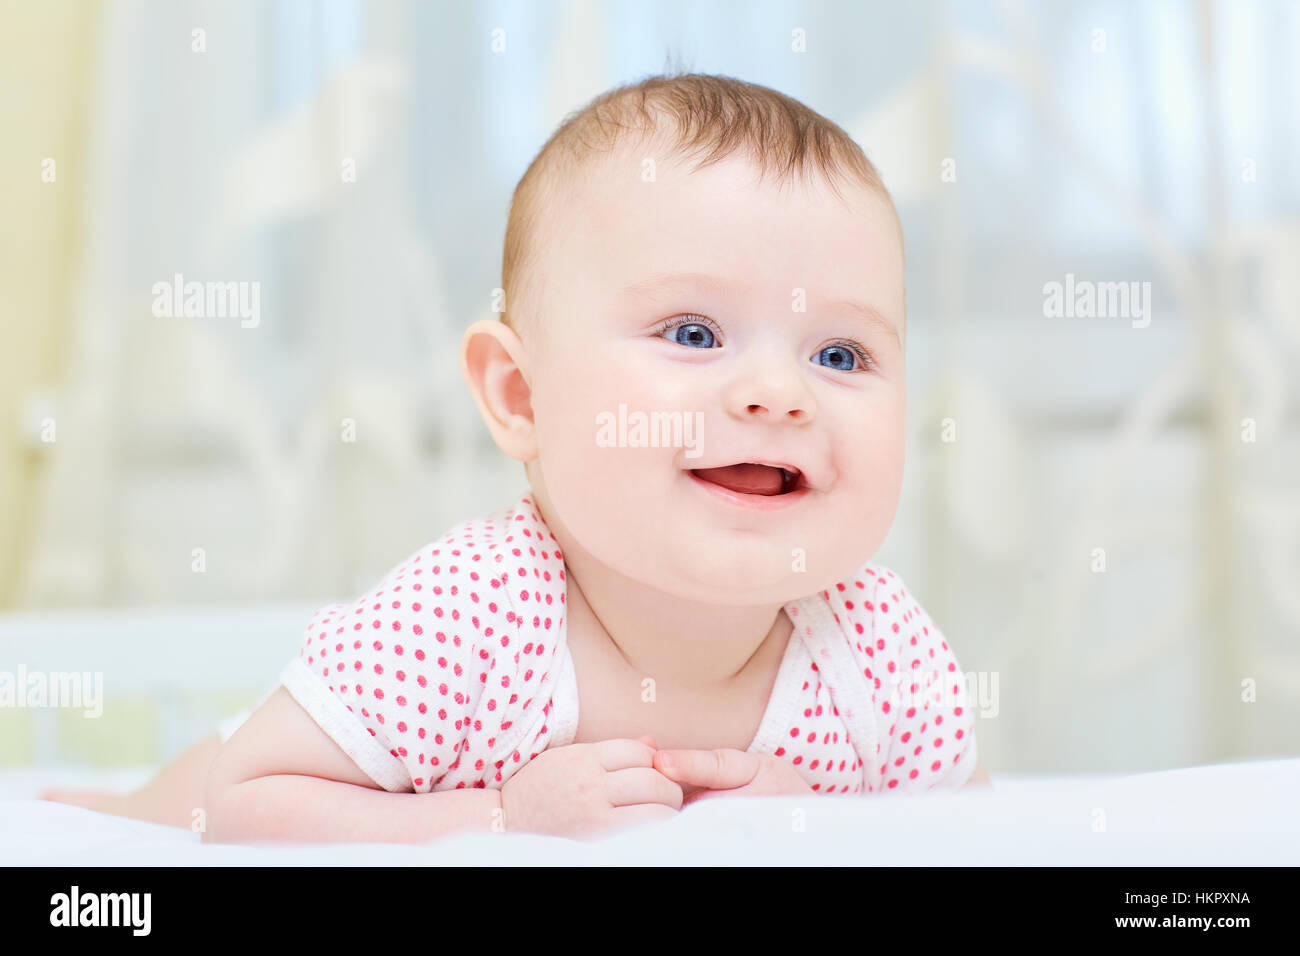 Baby, Kleinkind lächelnd auf einem weißen Bett liegend Stockfoto